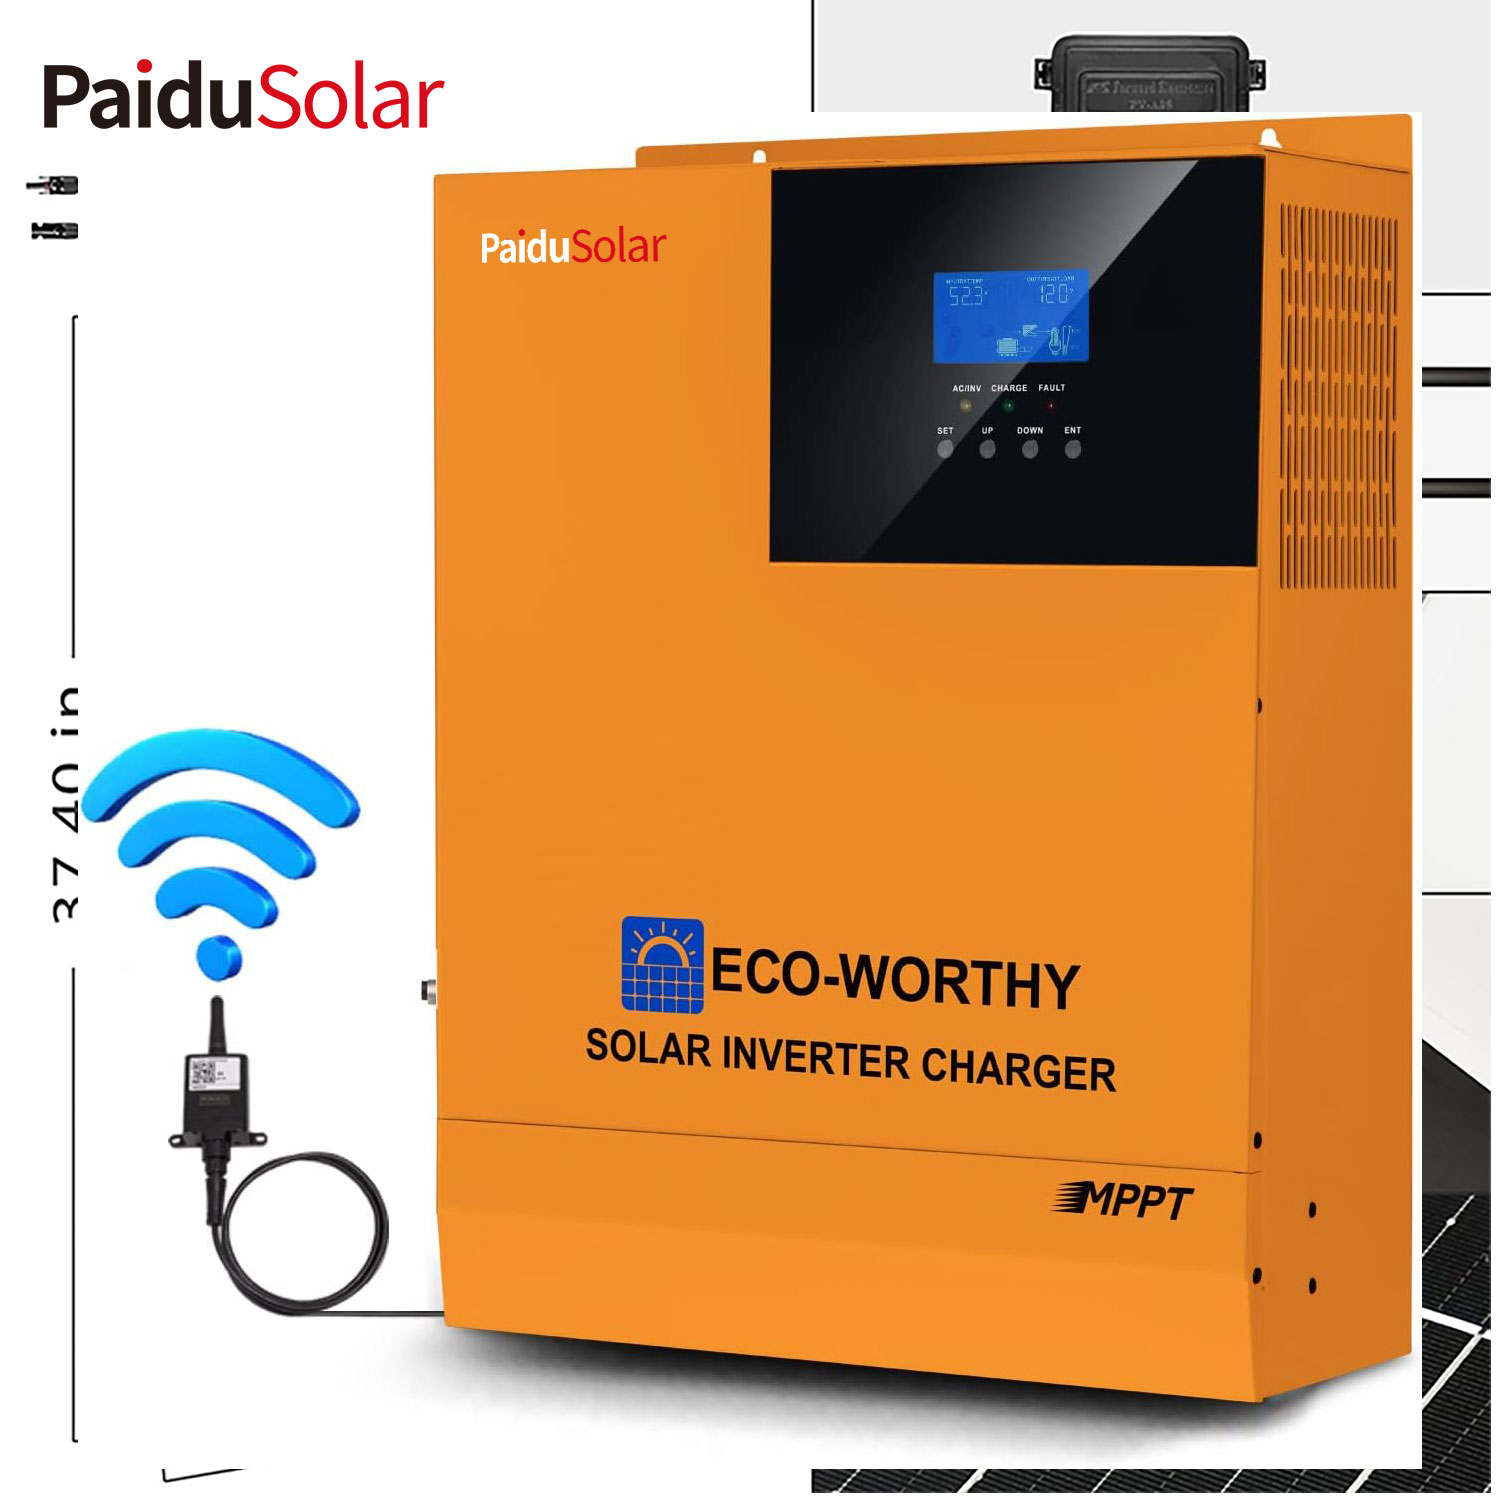 PaiduSolar All-in-One-Solar-Hybrid-Ladegerät-Wechselrichter mit integriertem Wechselrichter und Solarregler